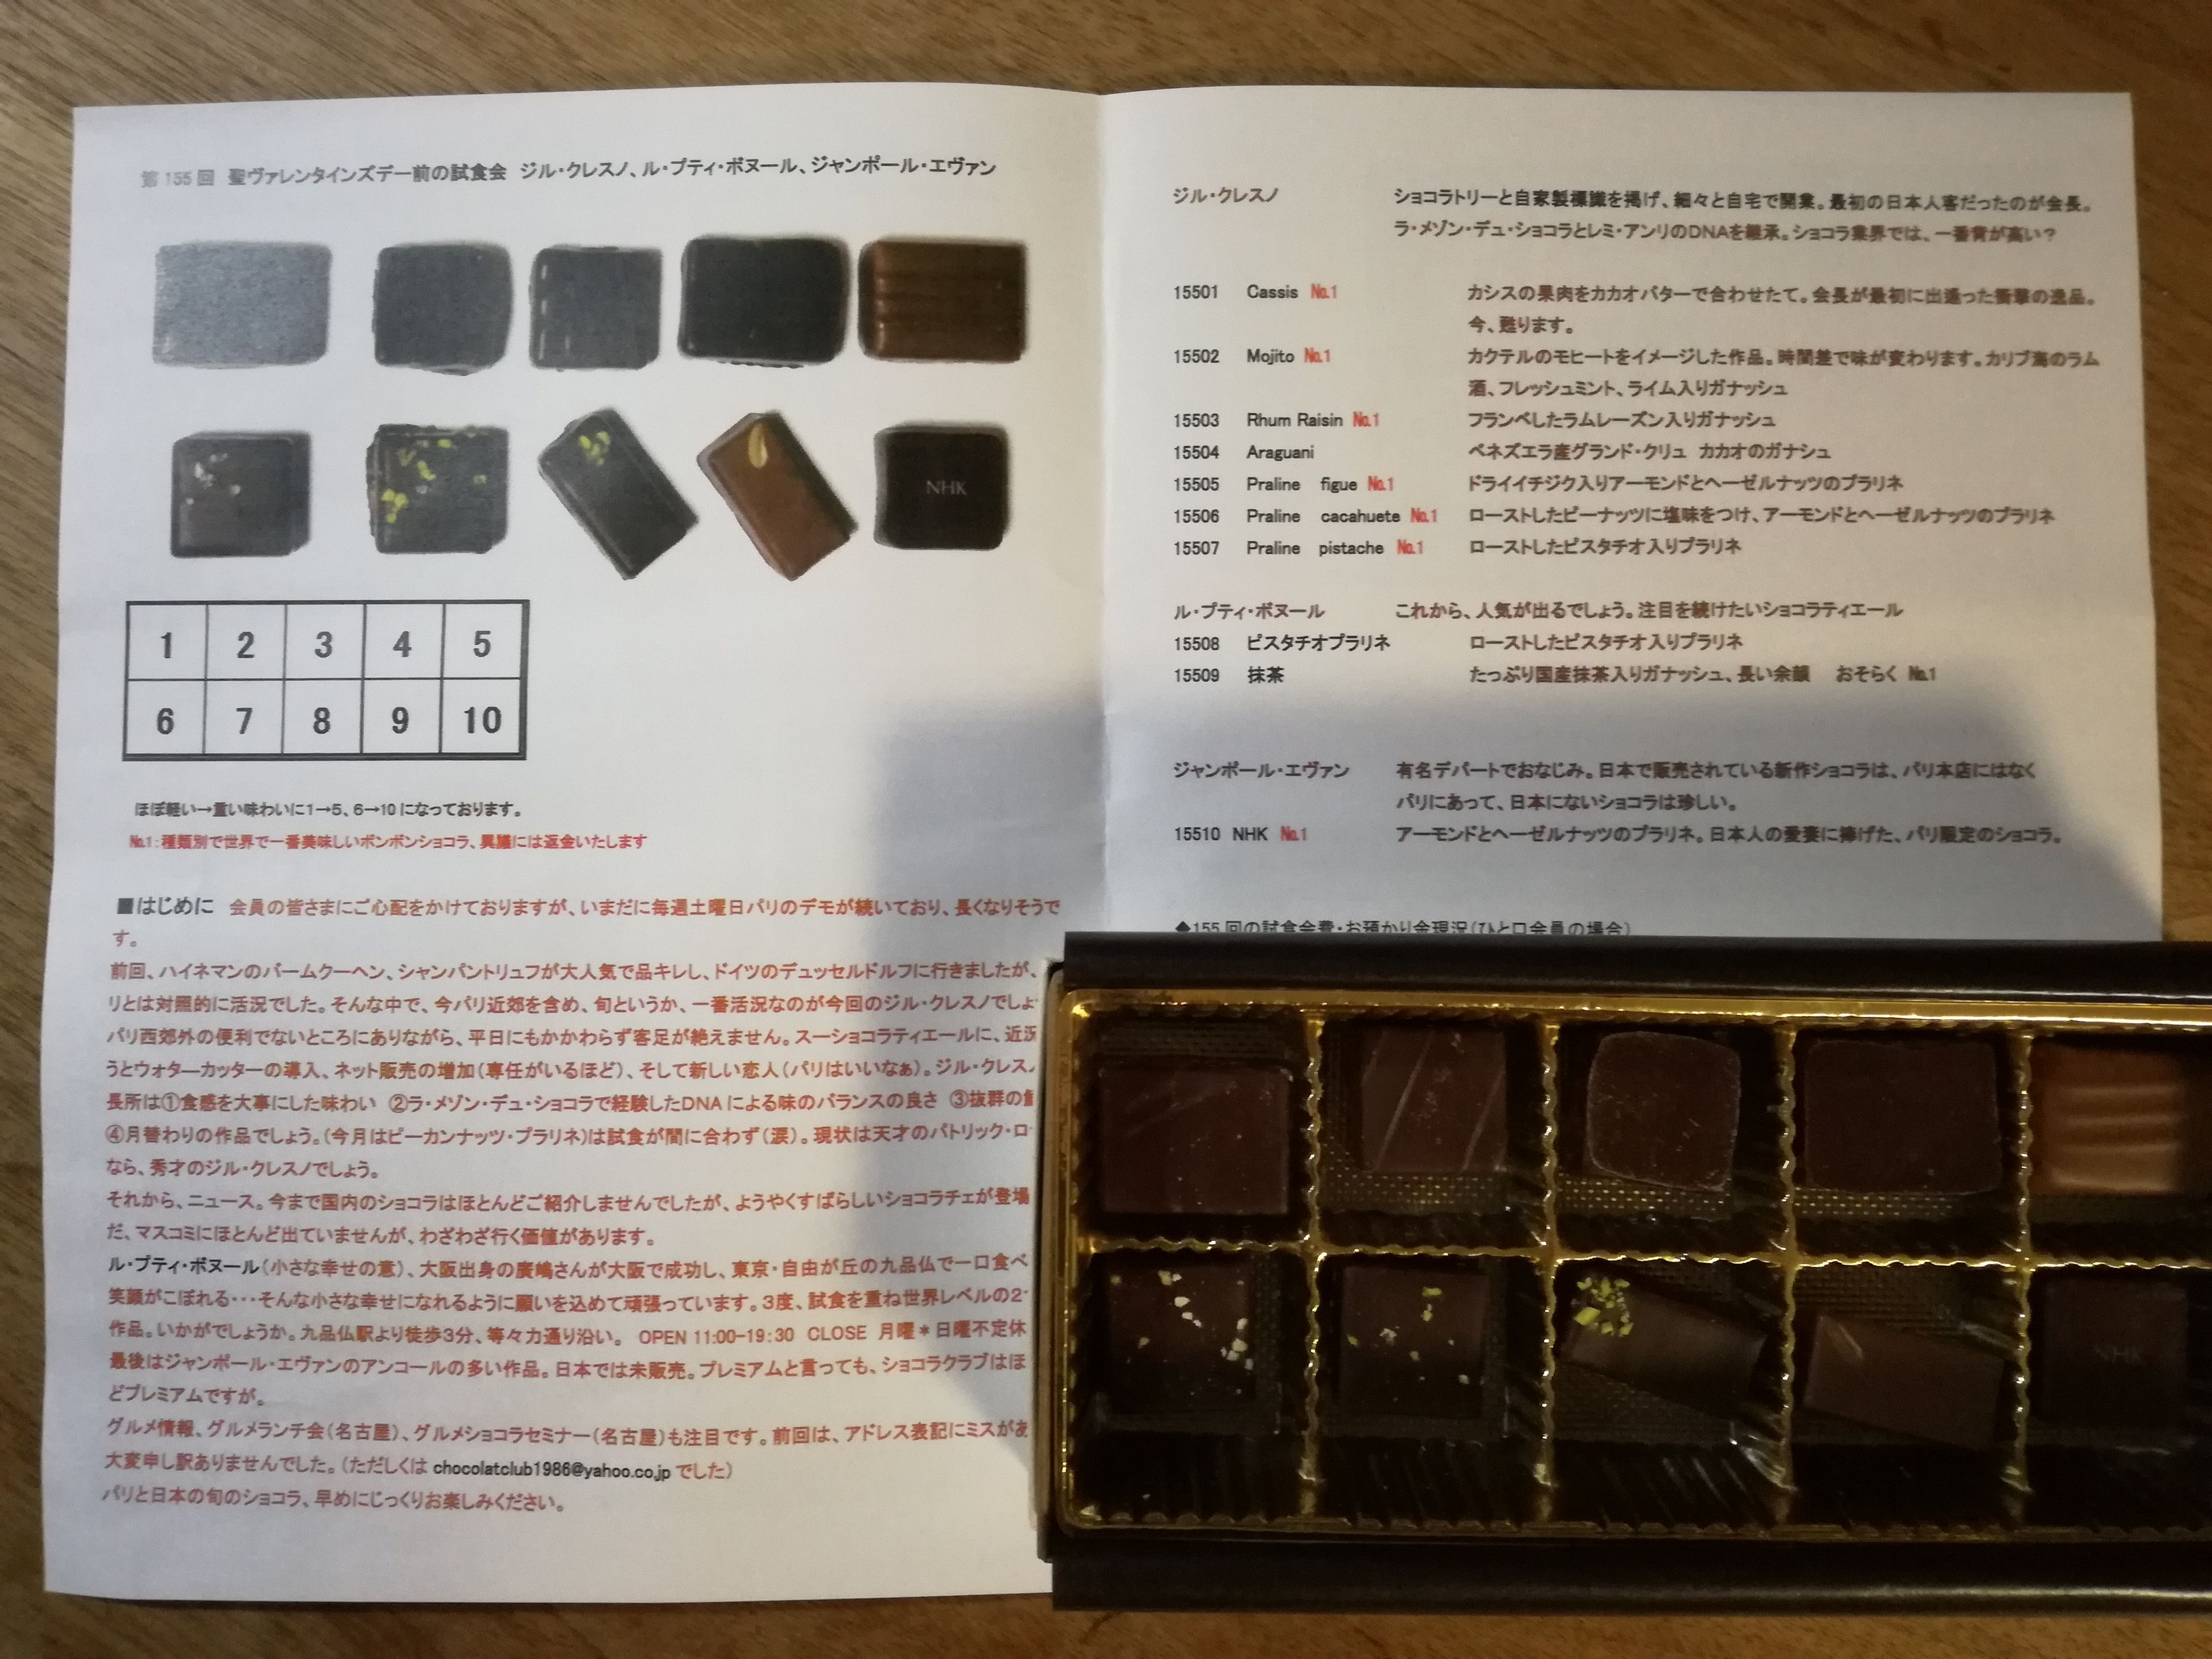 ショコラクラブ会報誌とチョコレートボックス